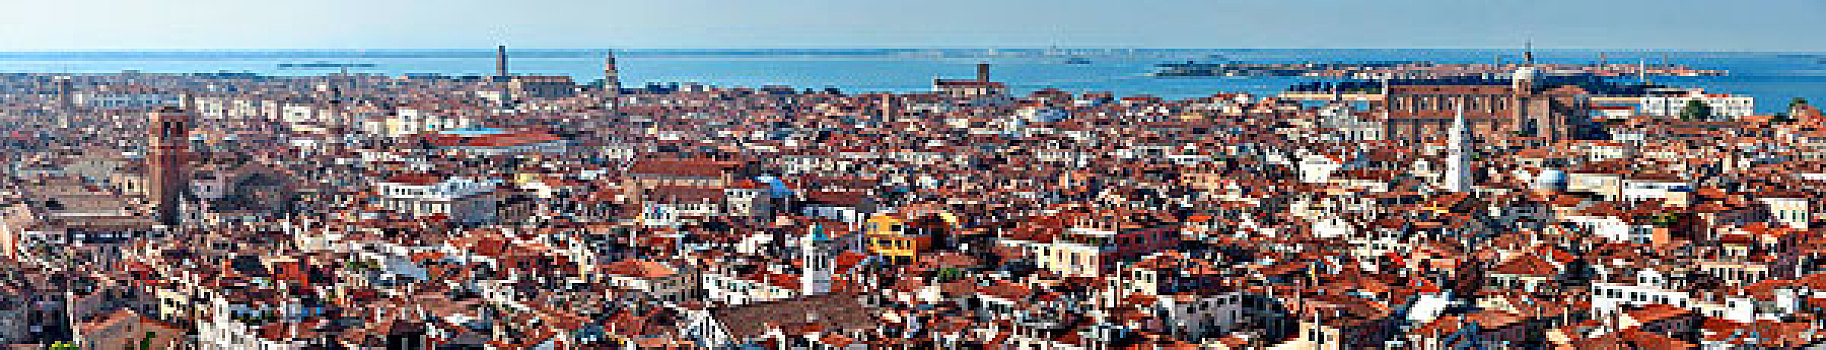 威尼斯,天际线,全景,俯视,钟楼,广场,意大利